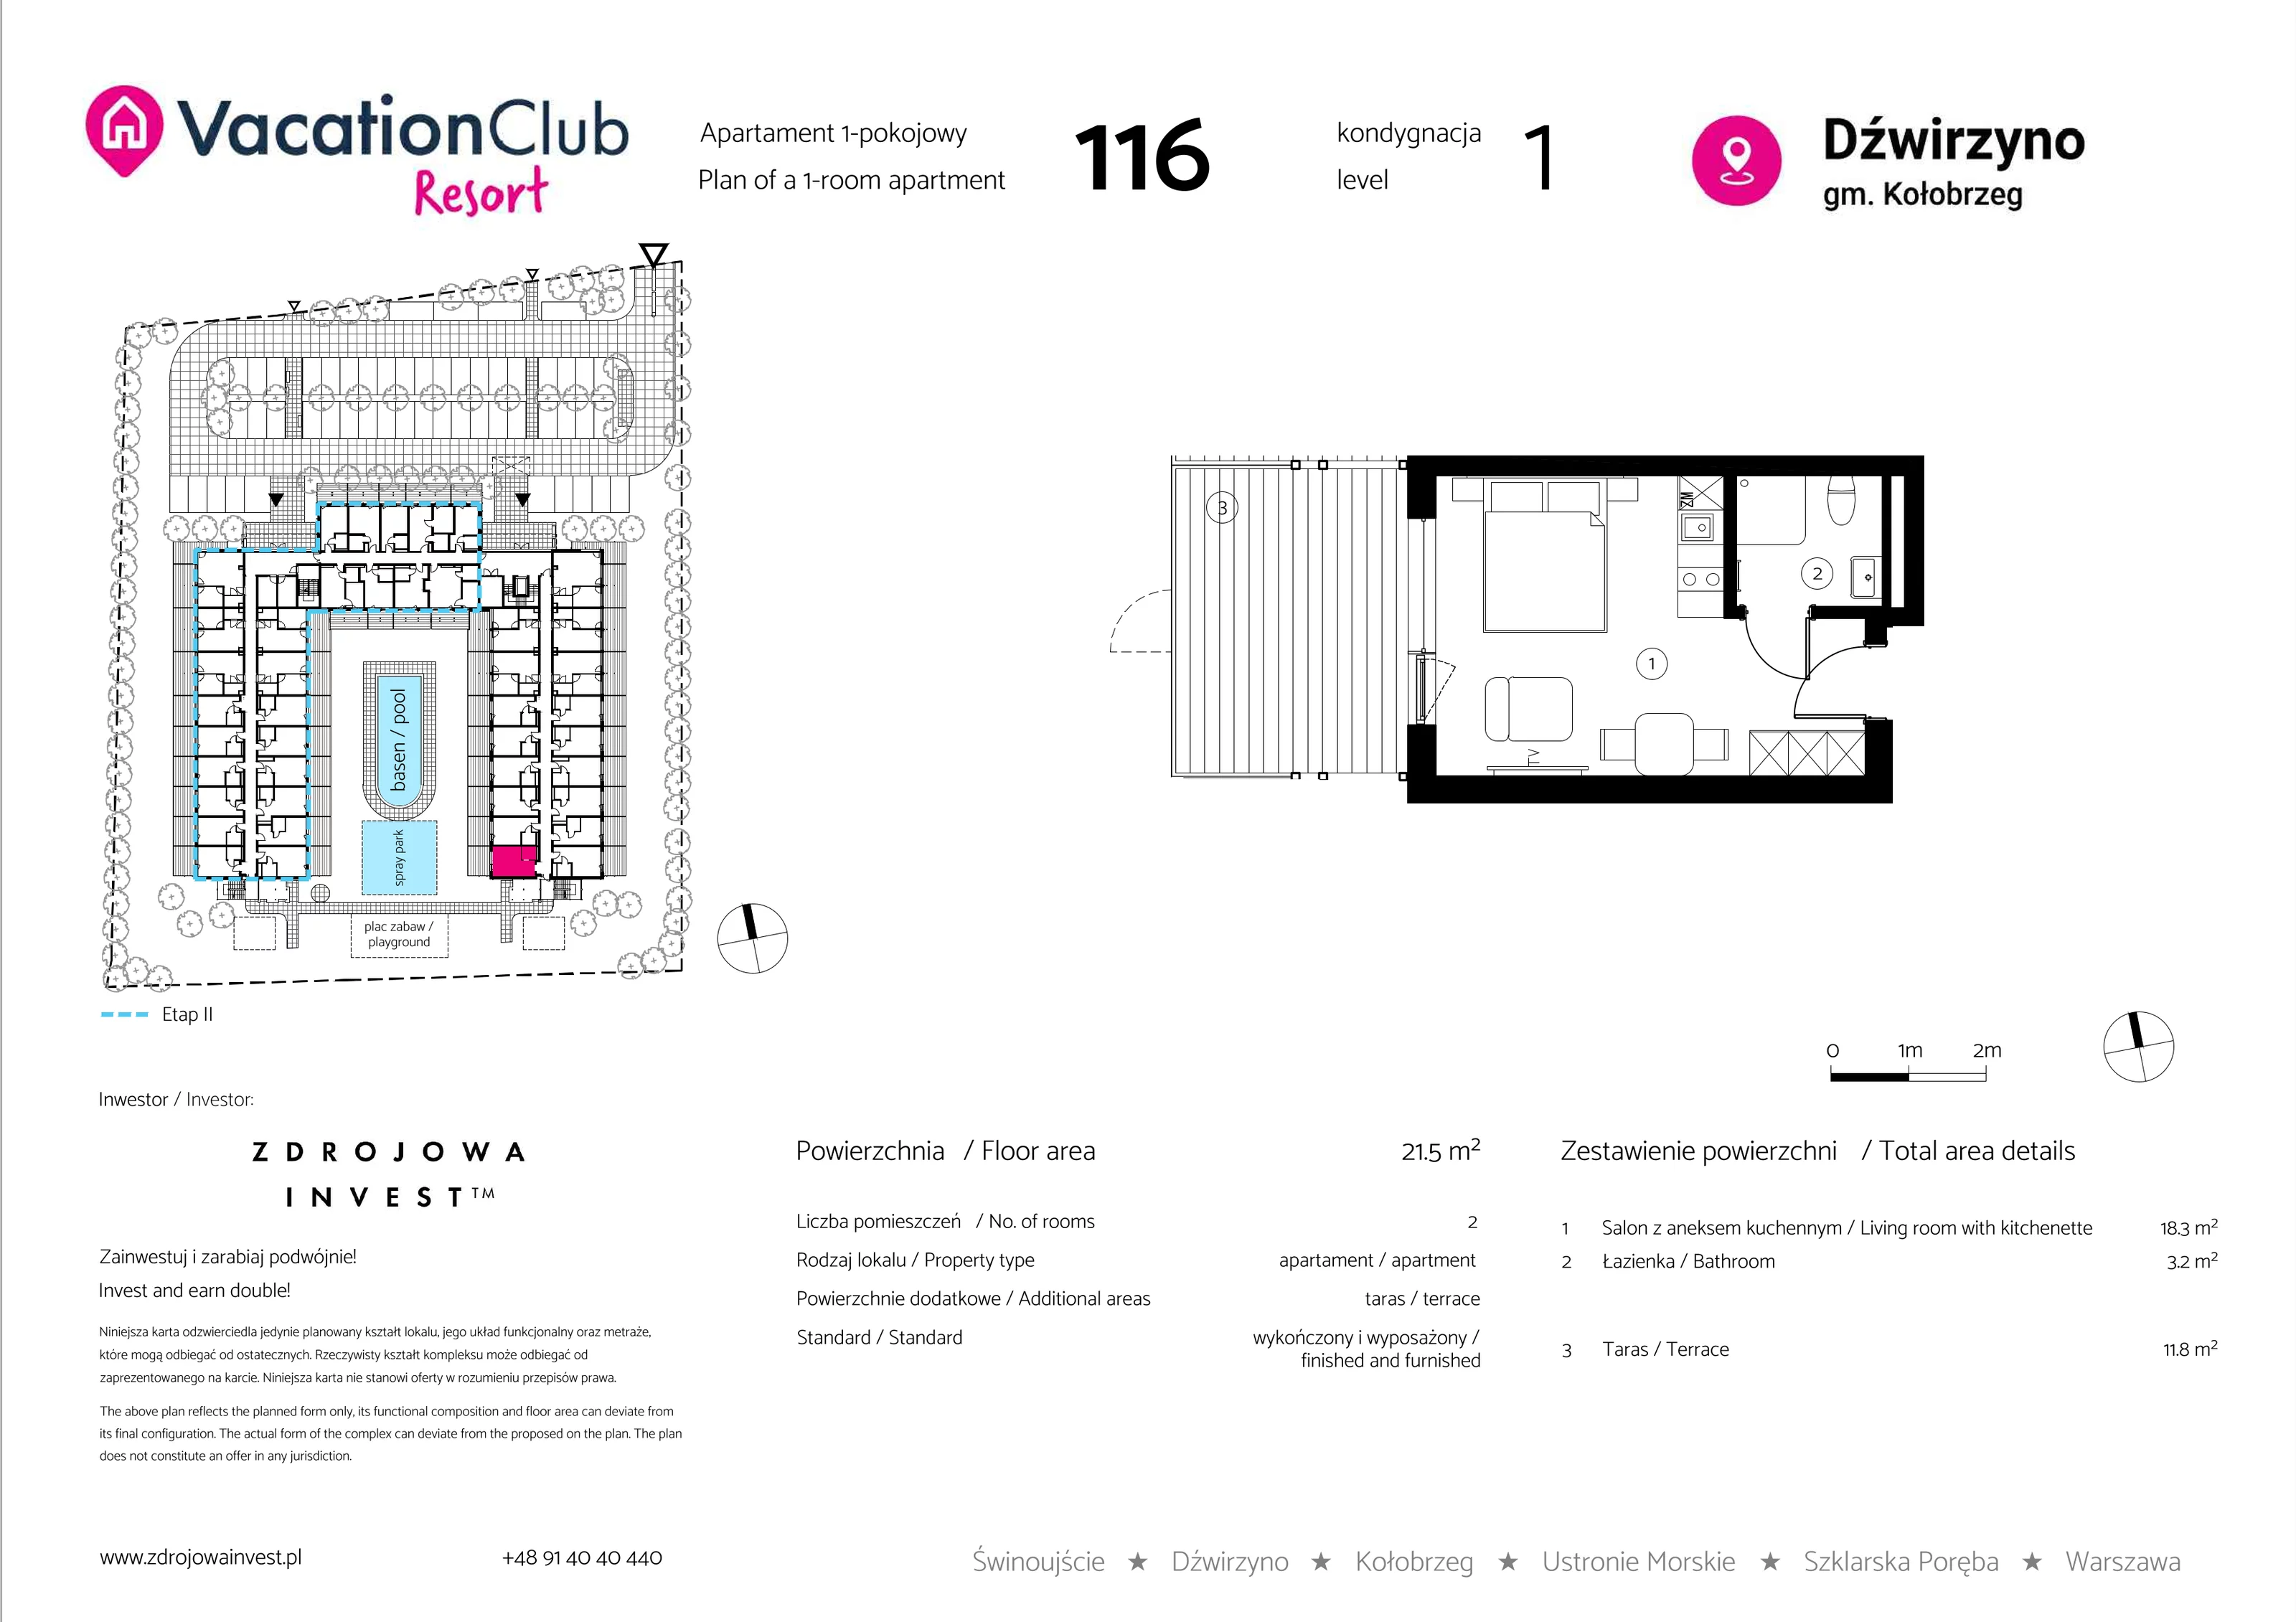 Apartament 21,50 m², parter, oferta nr 116, Vacation Club Resort - apartamenty wakacyjne, Dźwirzyno, ul. Wczasowa 8